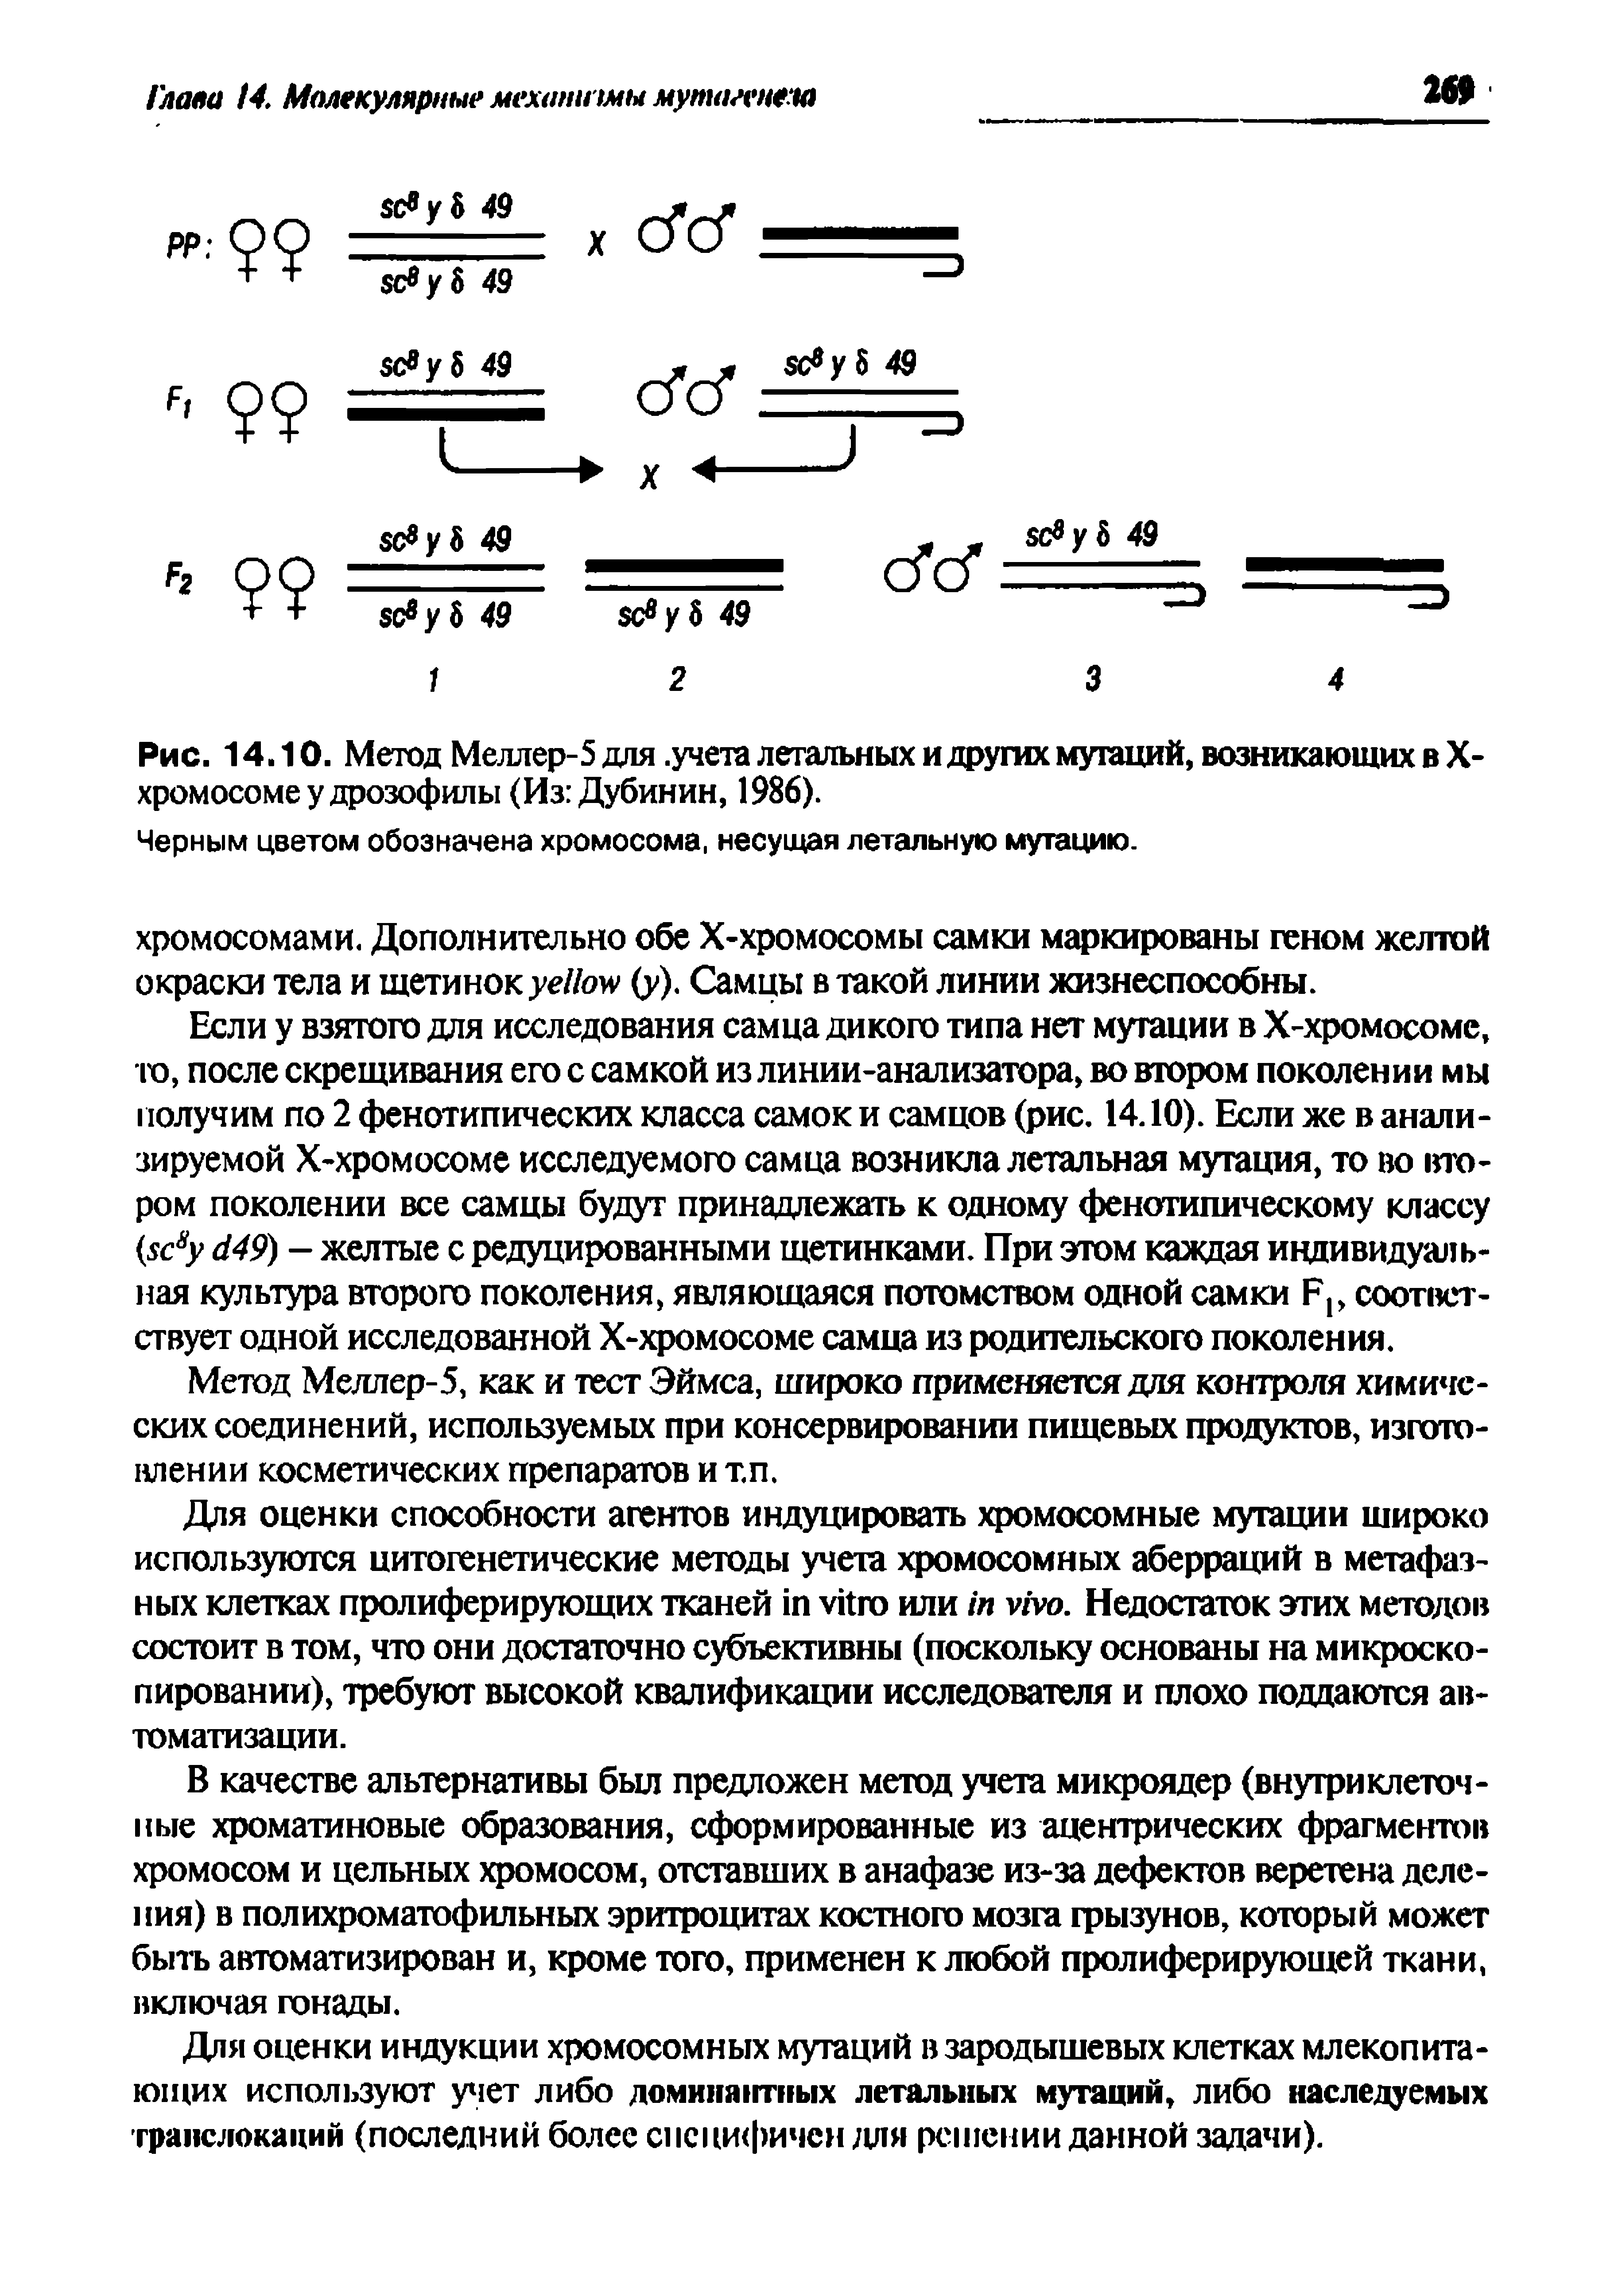 Рис. 14.10. Метод Меллер-5 для. учета летальных и других мутаций, возникающих в X-хромосоме у дрозофилы (Из Дубинин, 1986).